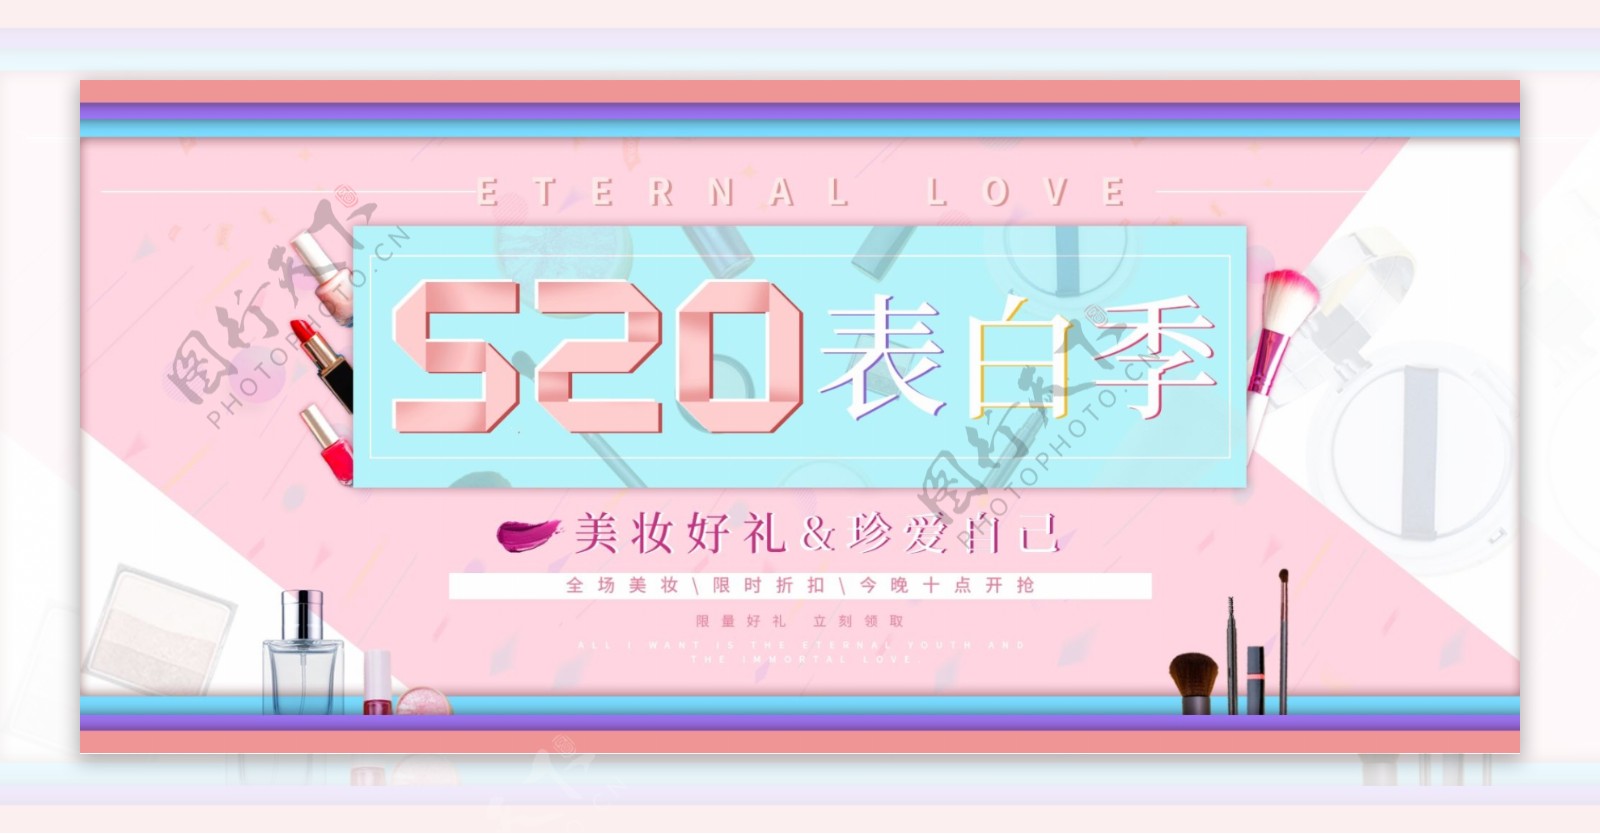 520表白节美妆网站banner